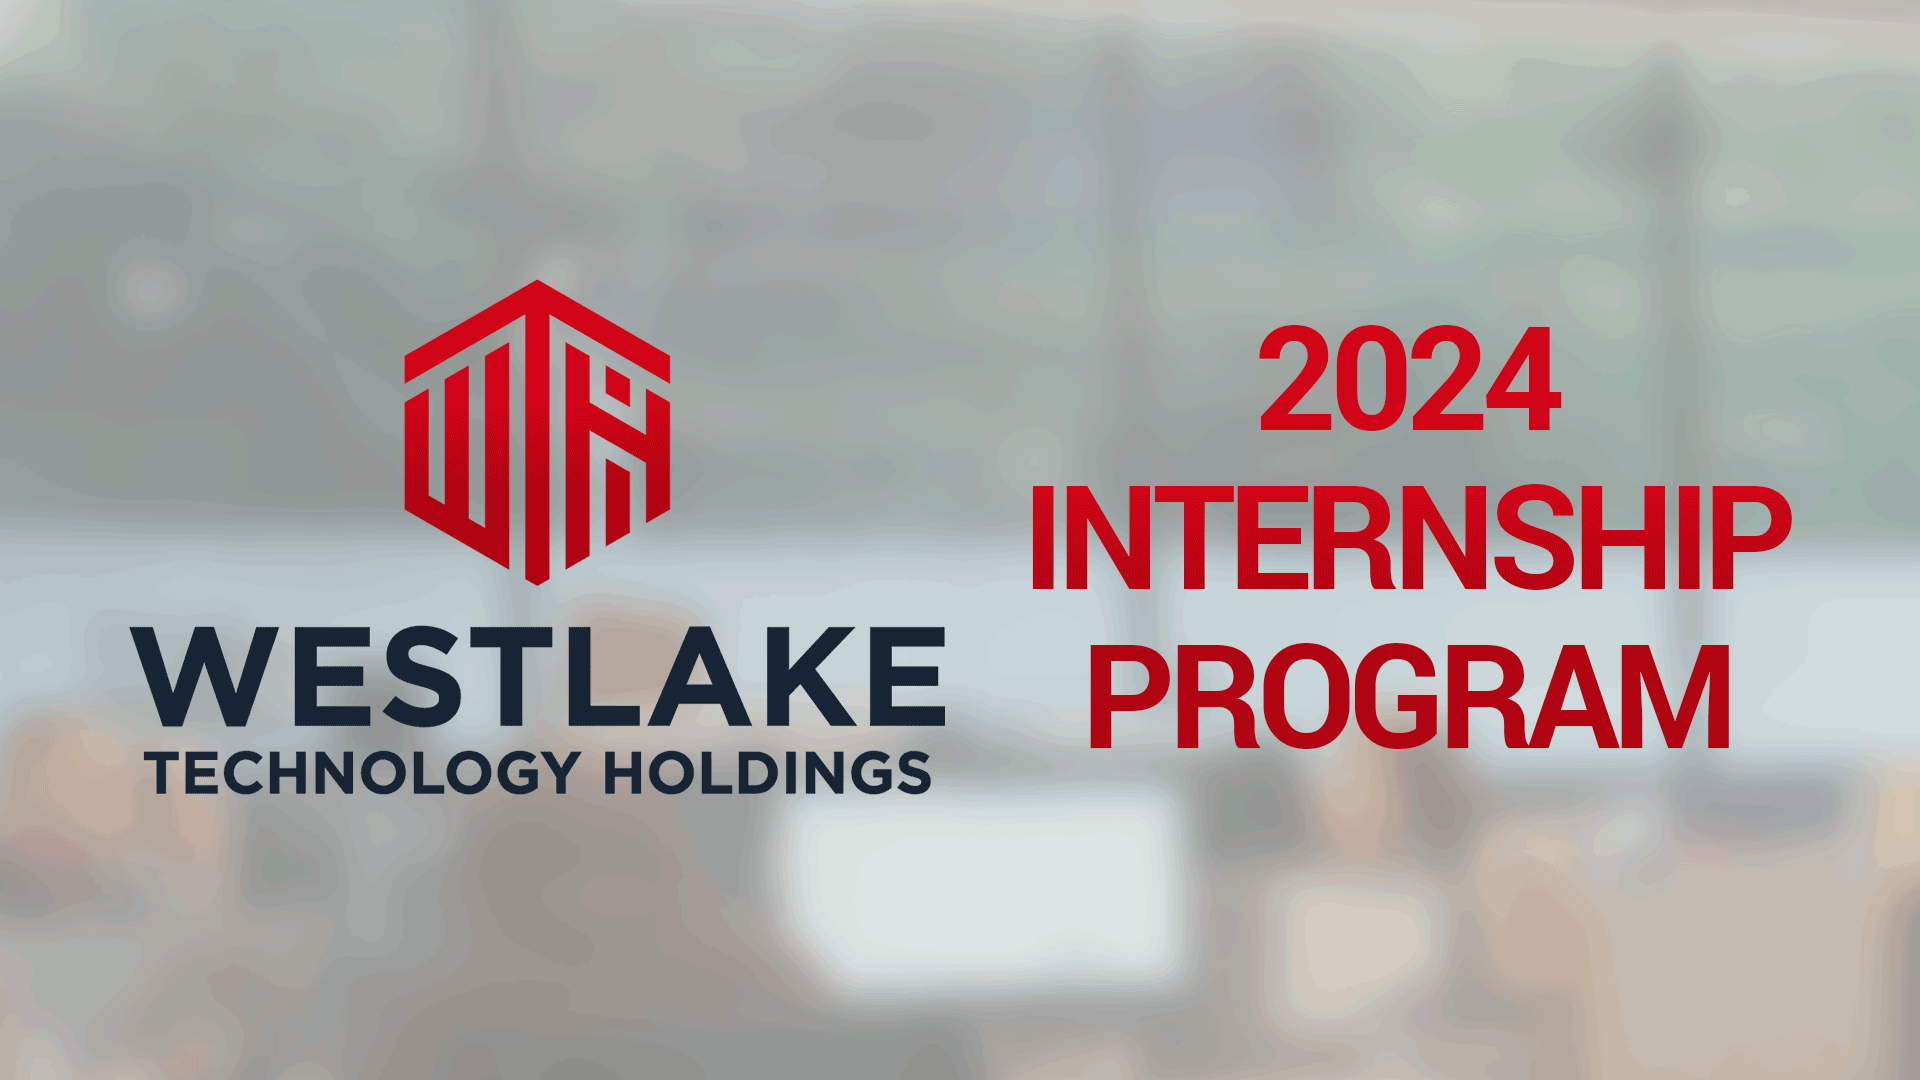 Westlake Technology Holdings - 2024 Internship Program Header for mobile